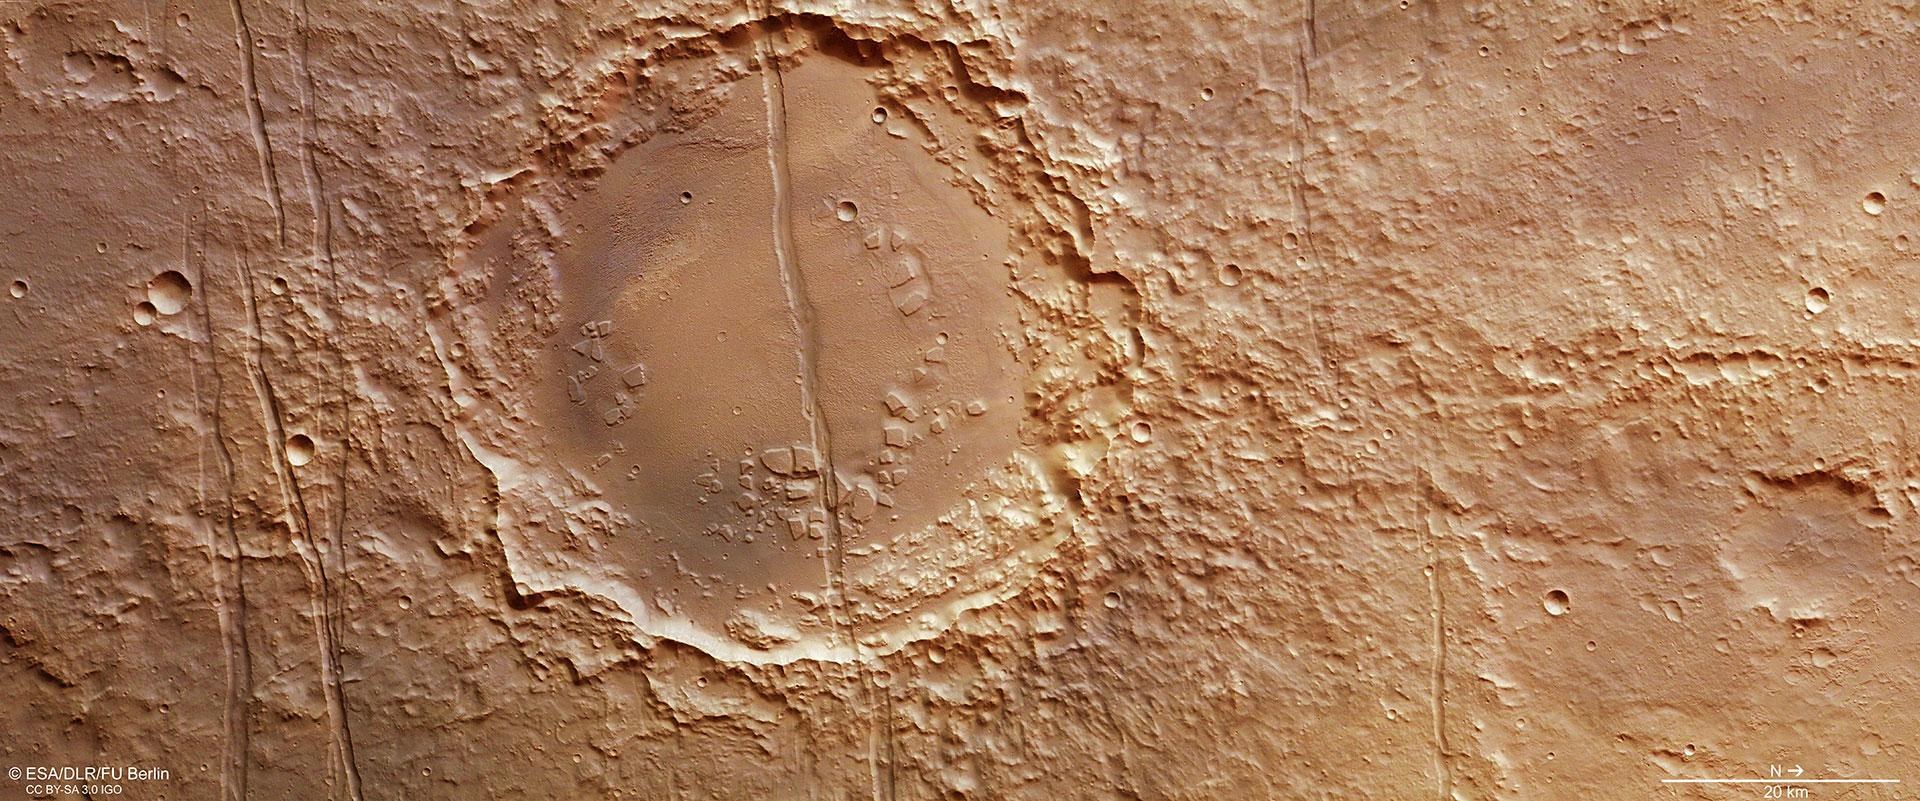 Senkrechte Draufsicht auf einen Krater in Memnonia Fossae